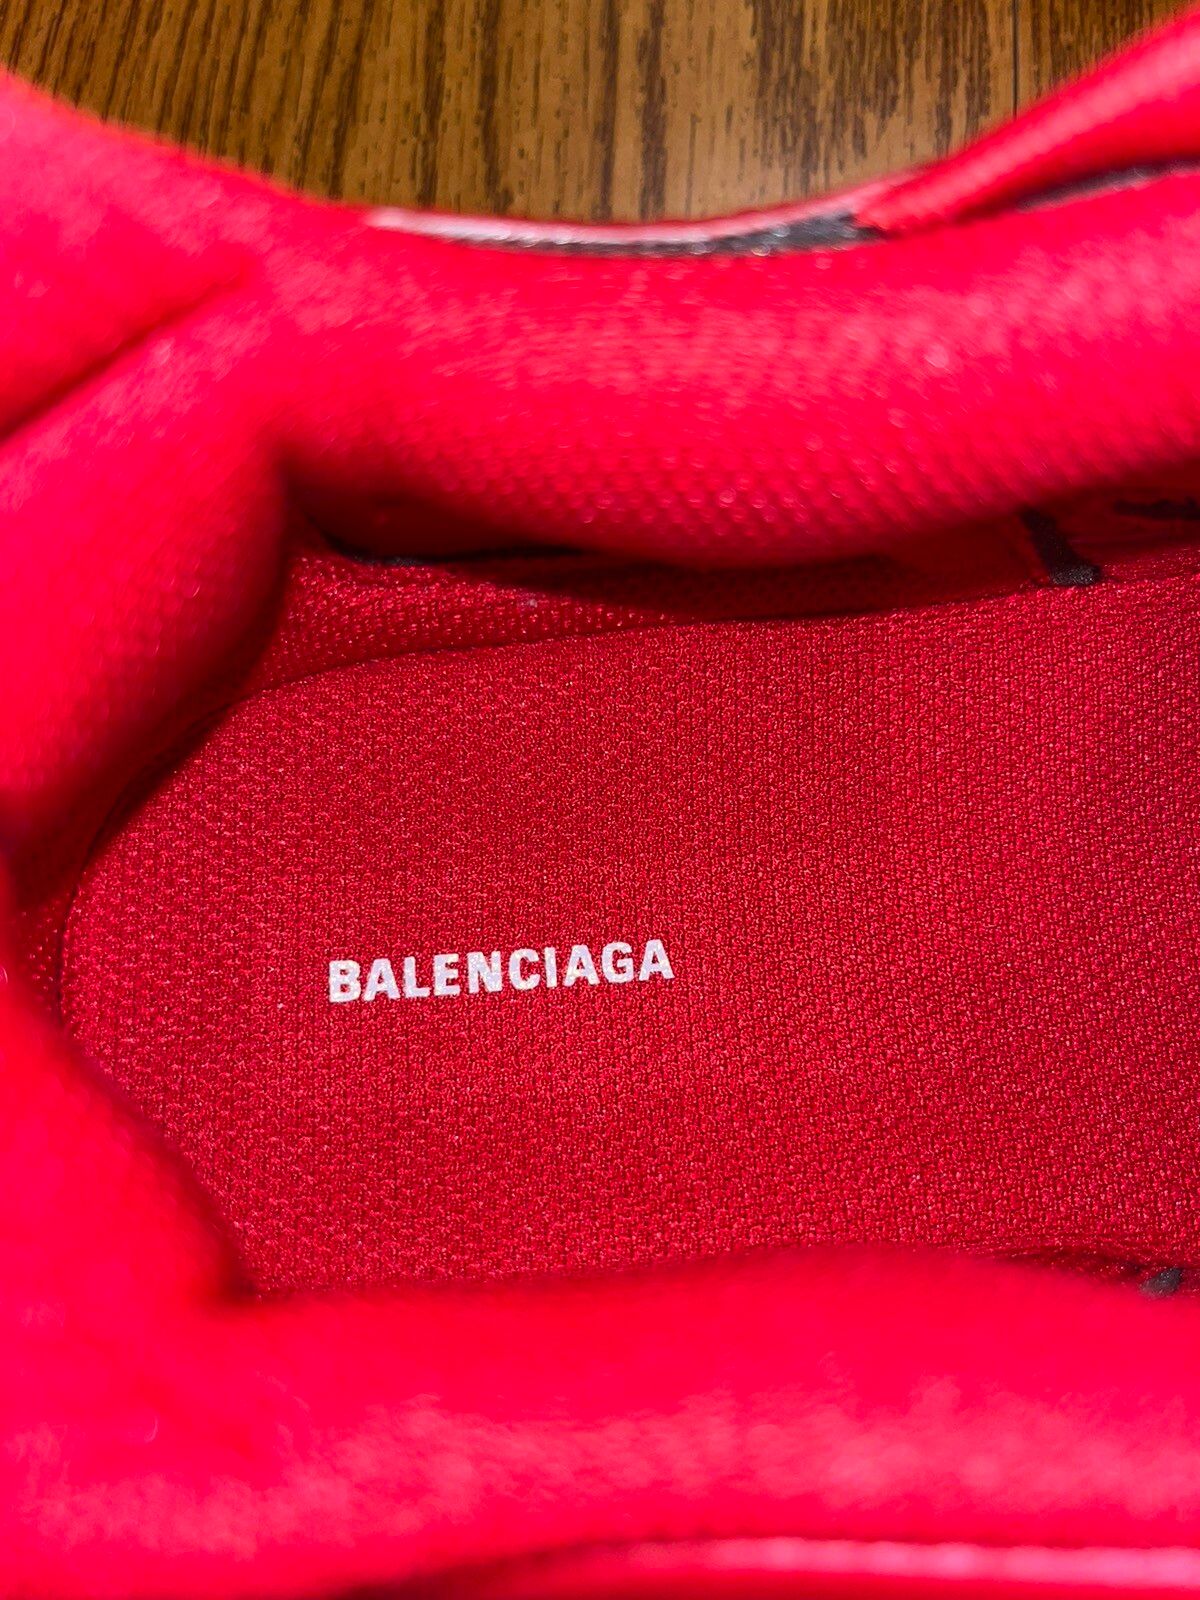 Balenciaga Balenciaga Track 2 Sneaker Size US 10 / EU 43 - 9 Thumbnail